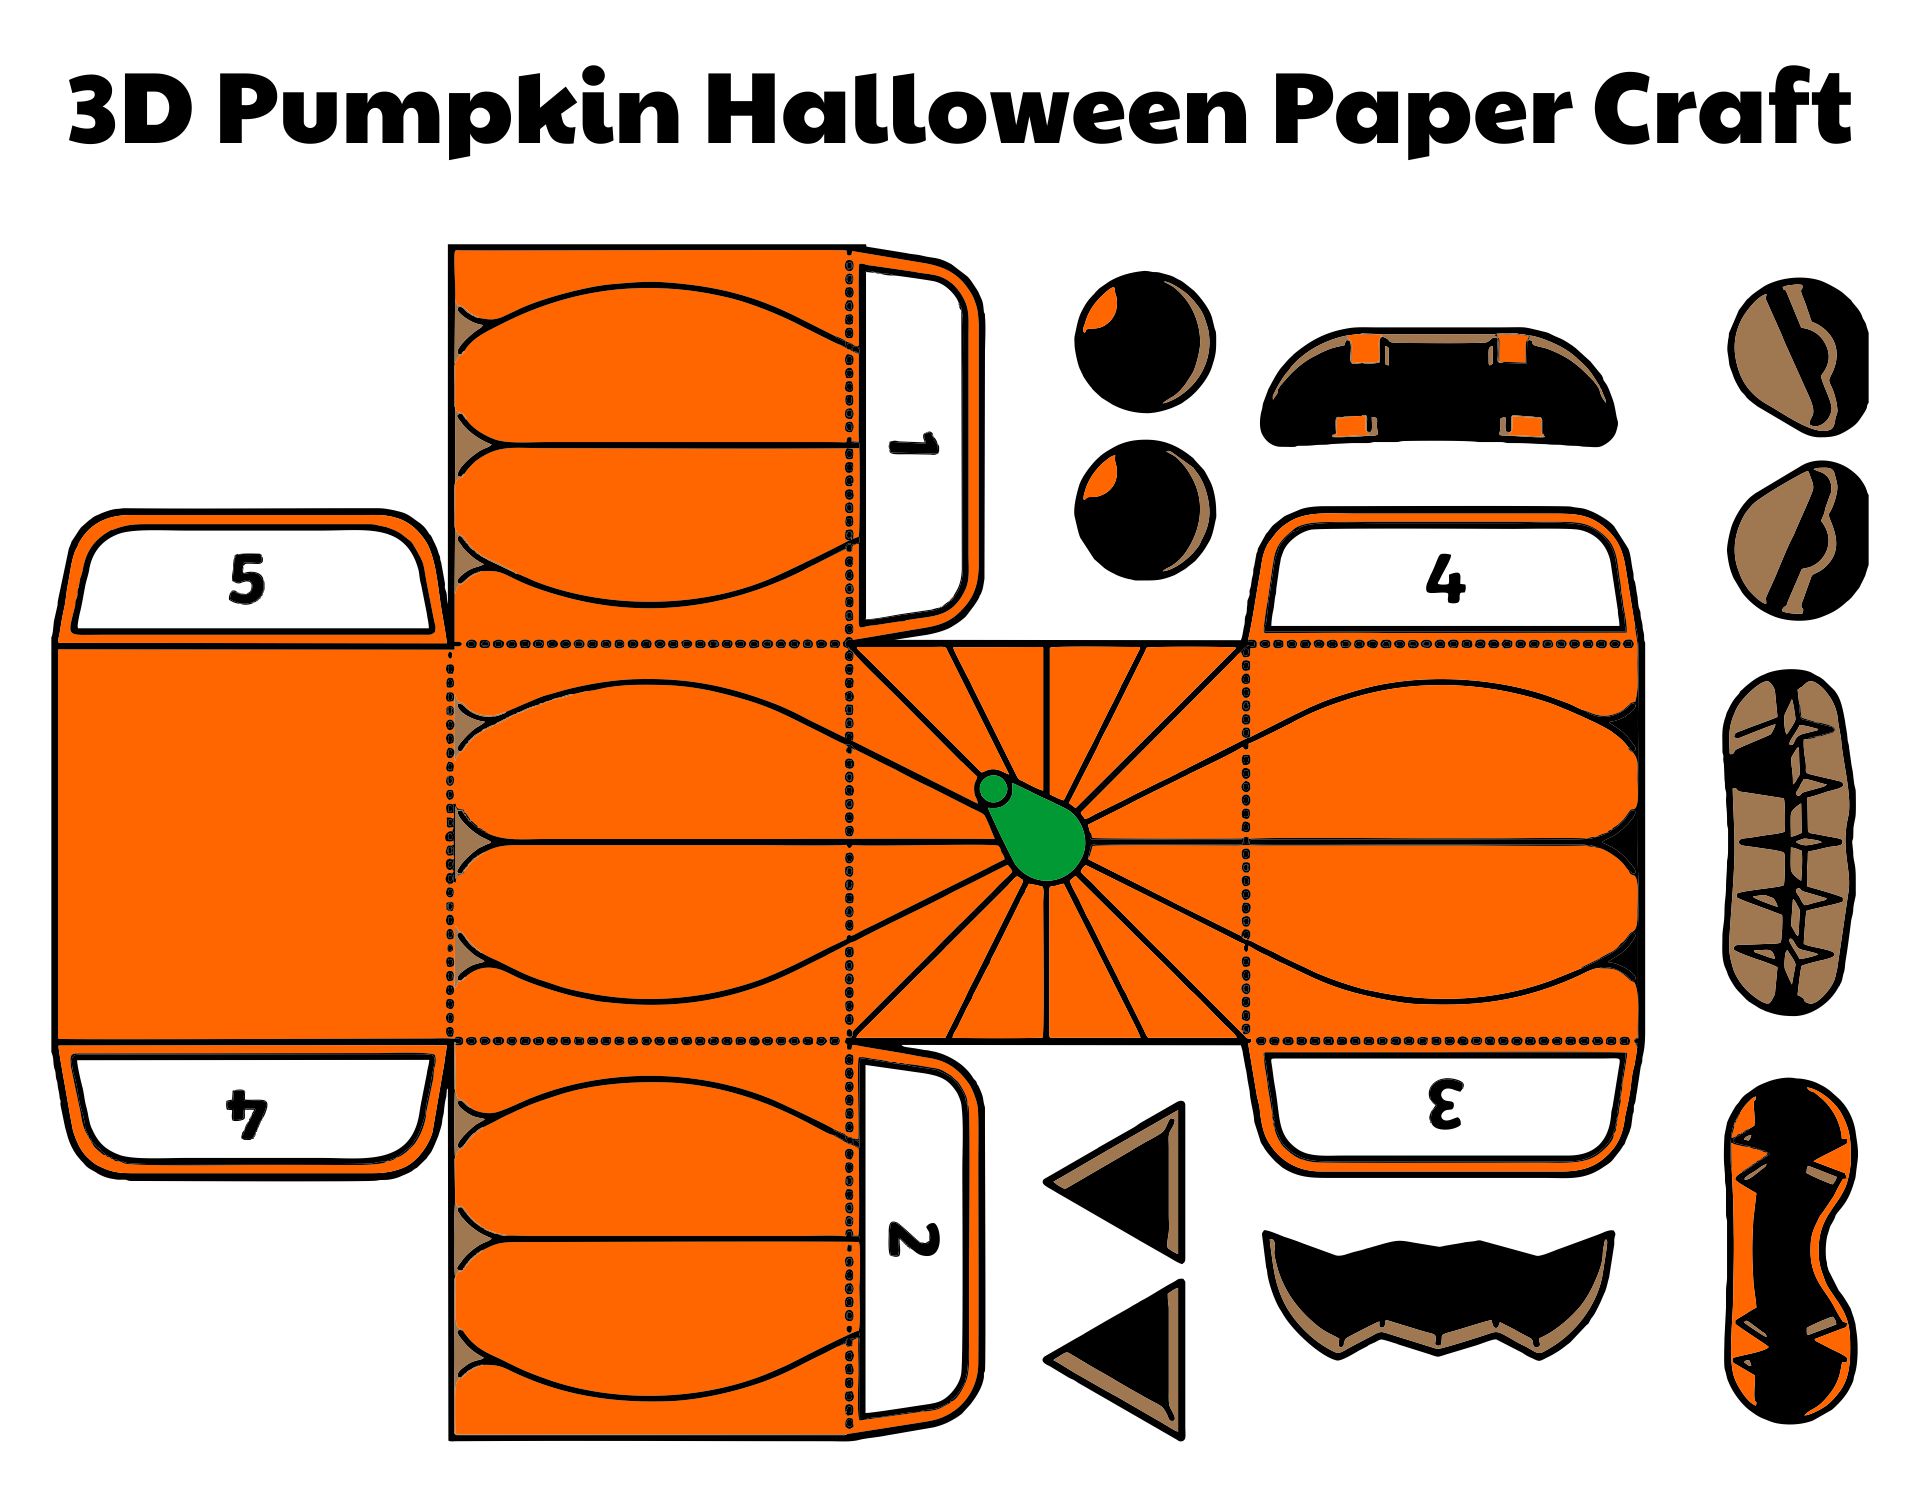 3D Pumpkin Halloween Paper Craft